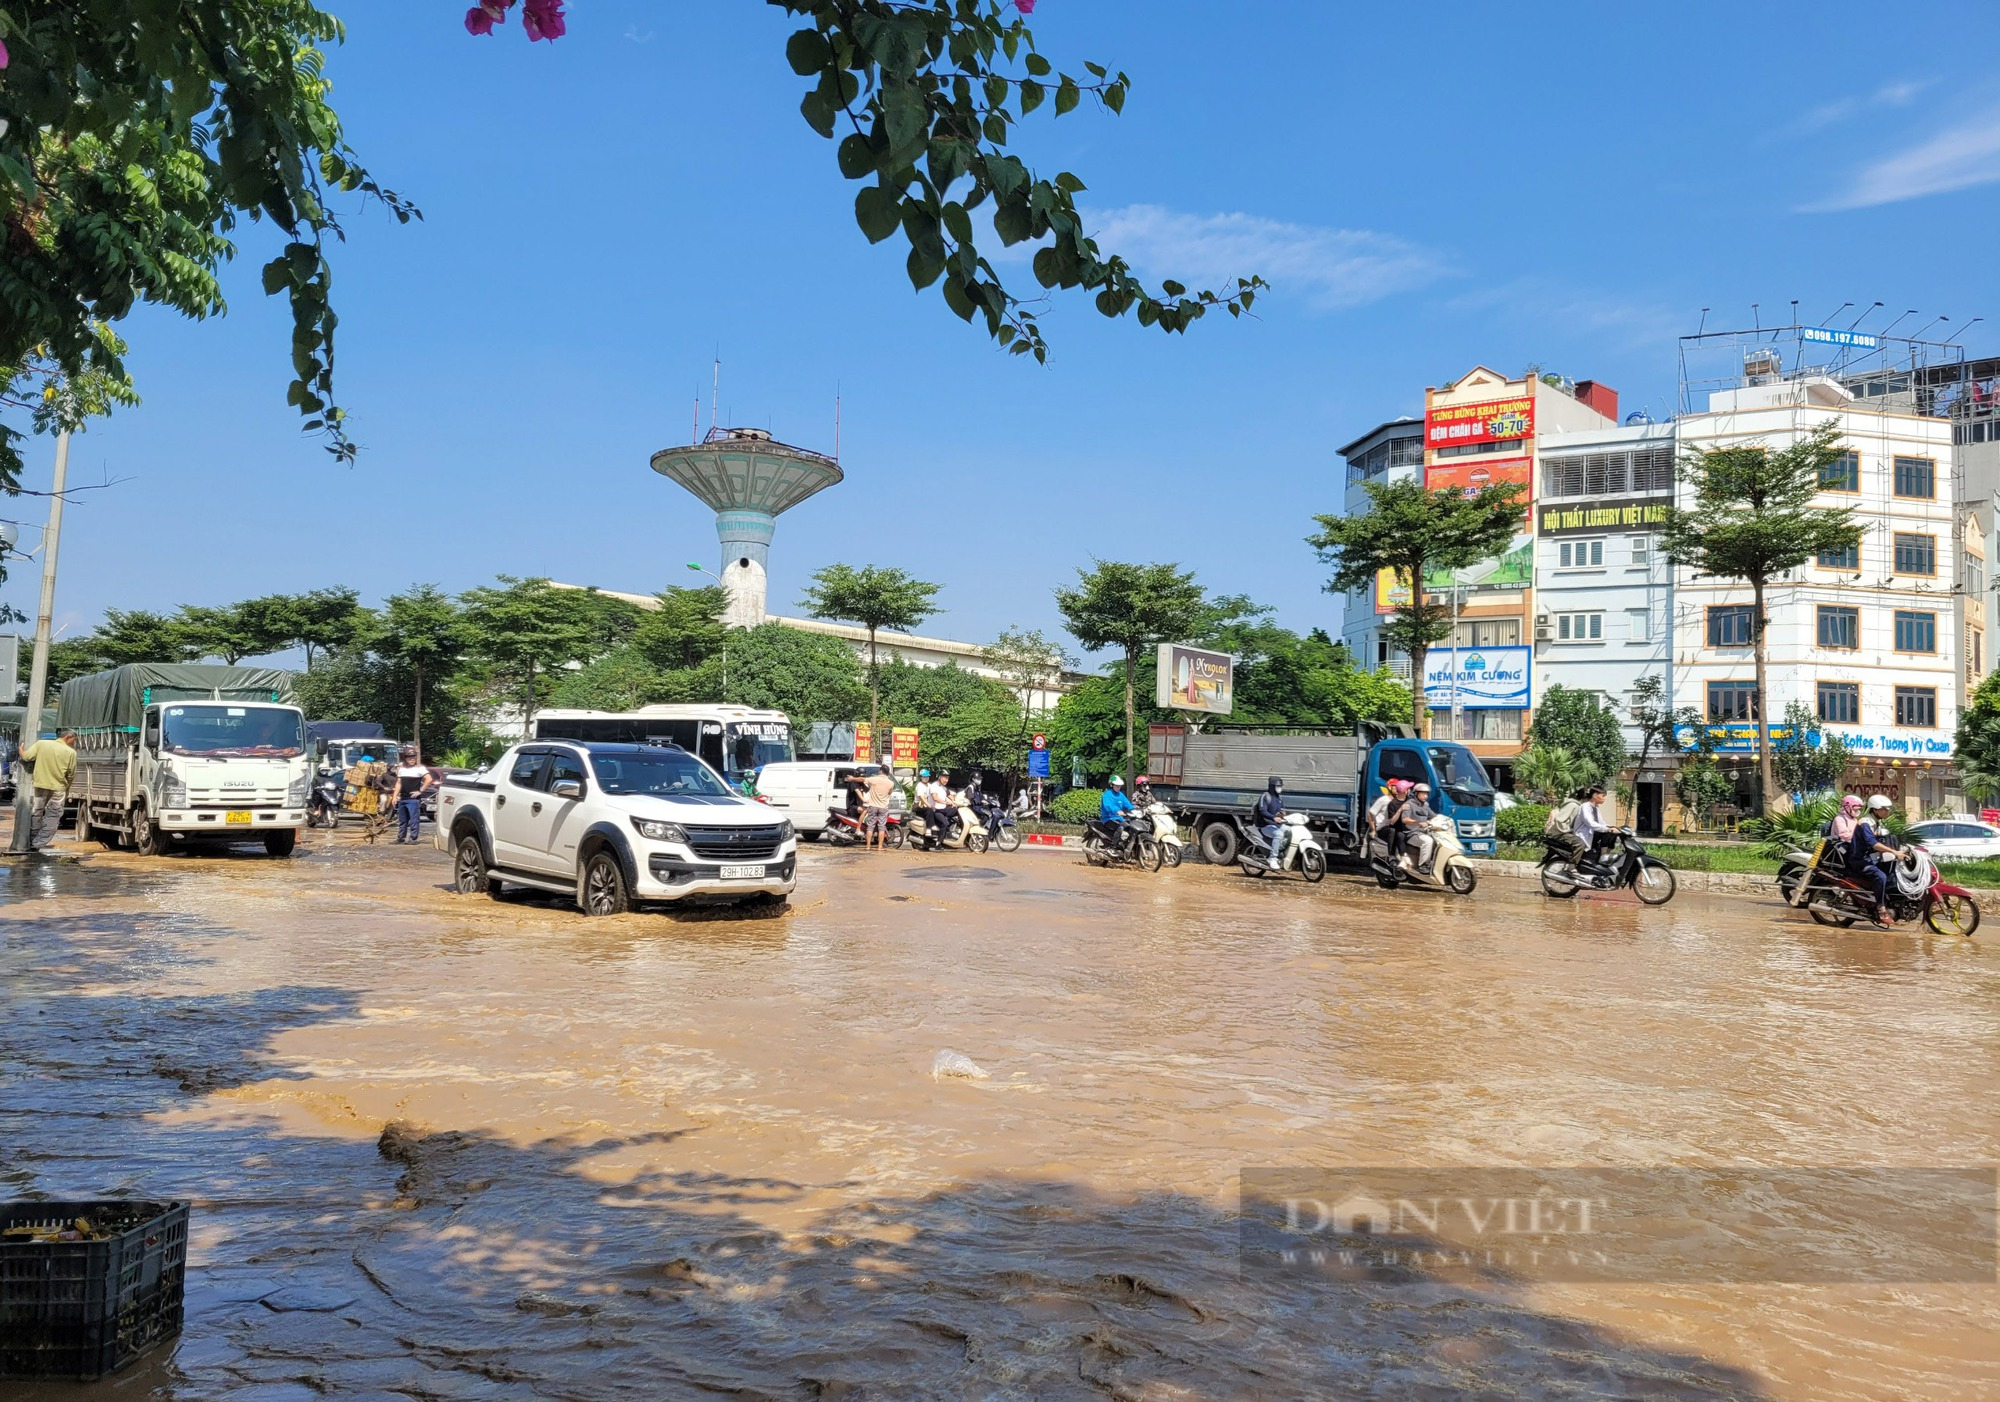  Nước tràn lênh láng trên mặt đường vừa thi công đường ống ở quận Hà Đông - Ảnh 7.